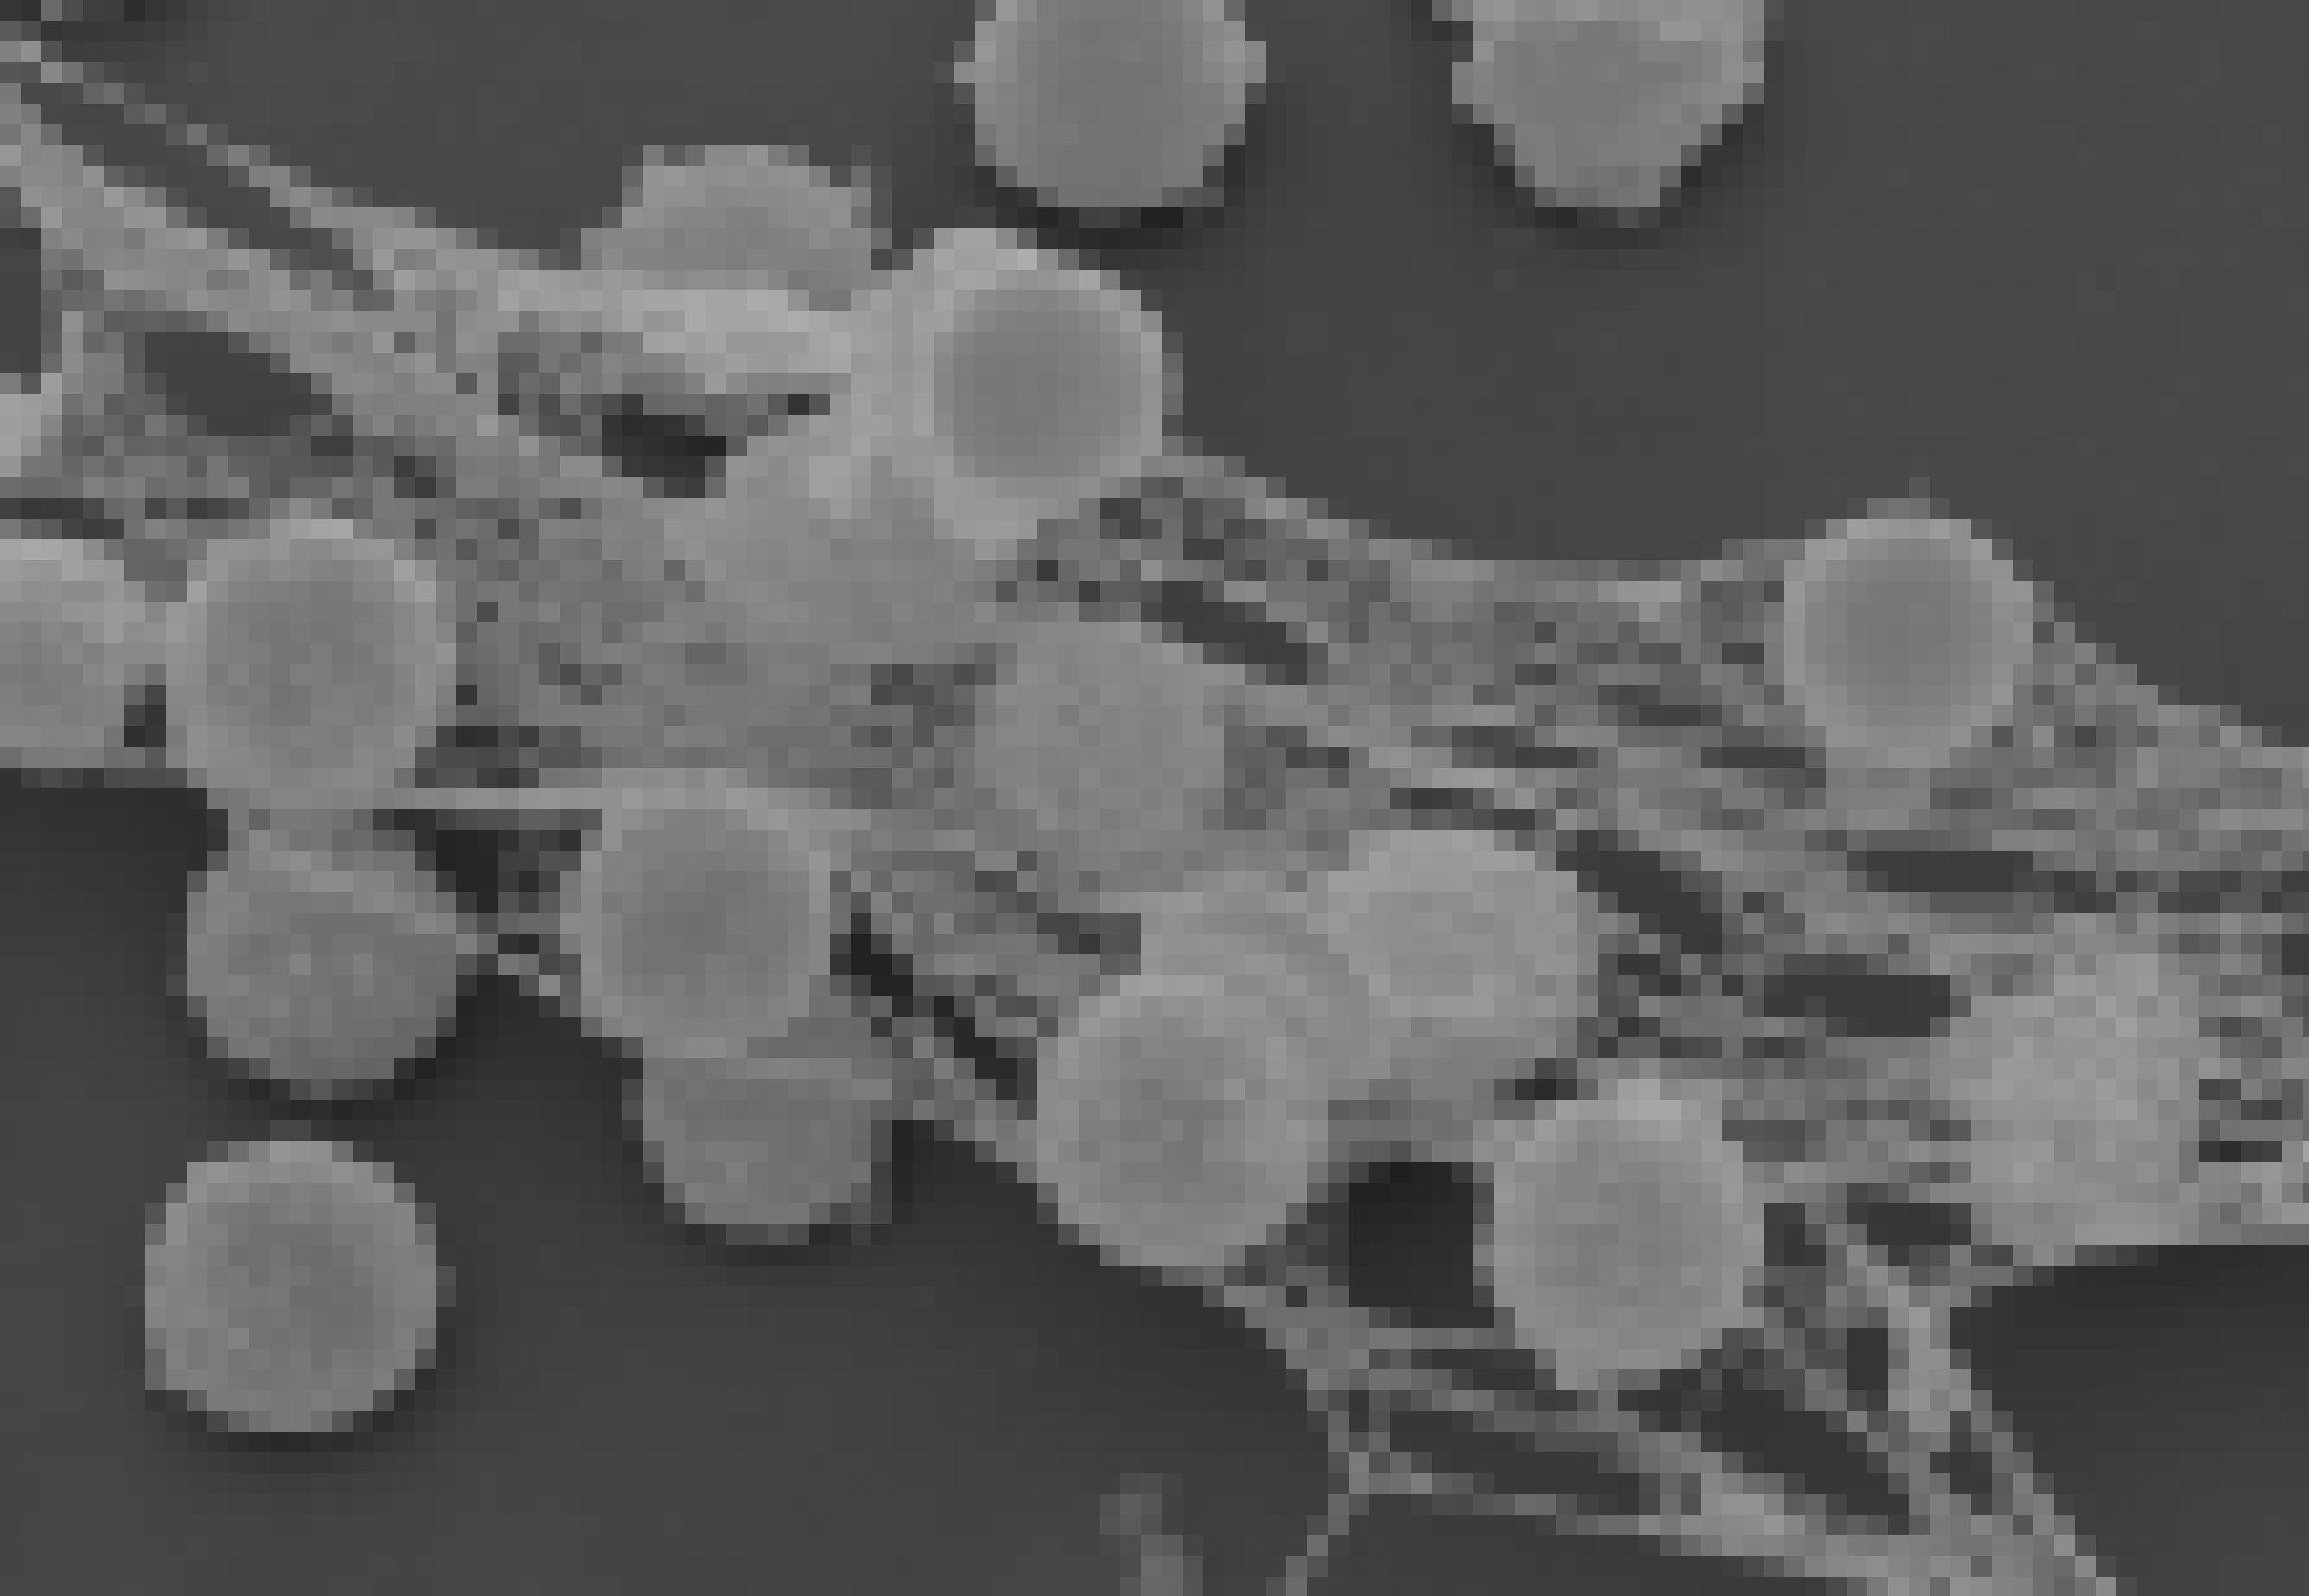 Das Bild zeigt eine rasterelektronenmikroskopische Aufnahme von aktivierten Immunzellen, die durch eine netzartige Struktur miteinander verbunden sind